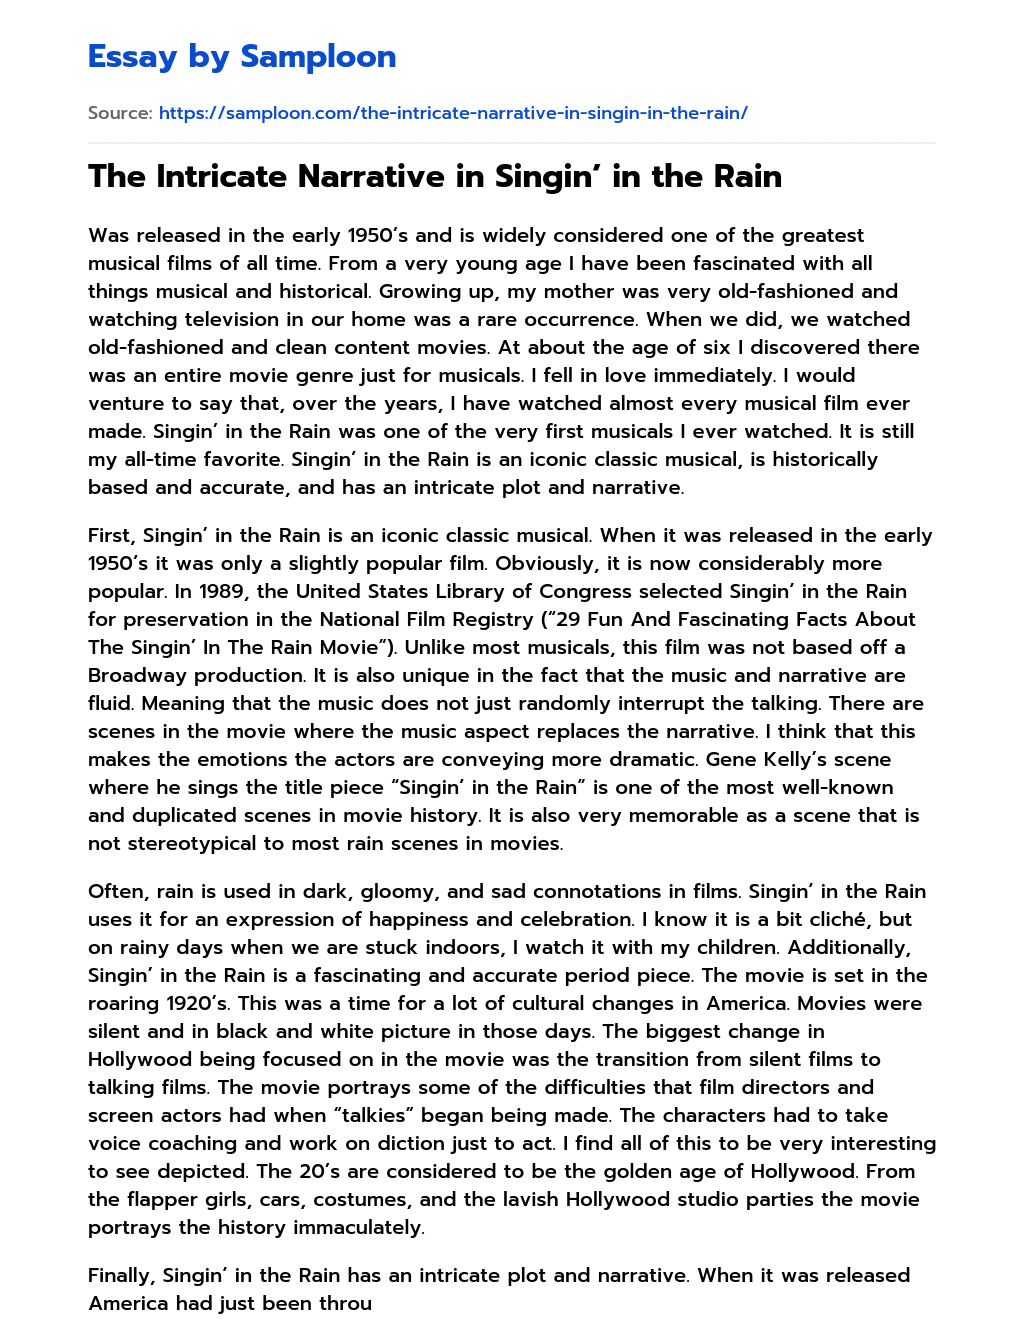 The Intricate Narrative in Singin’ in the Rain essay